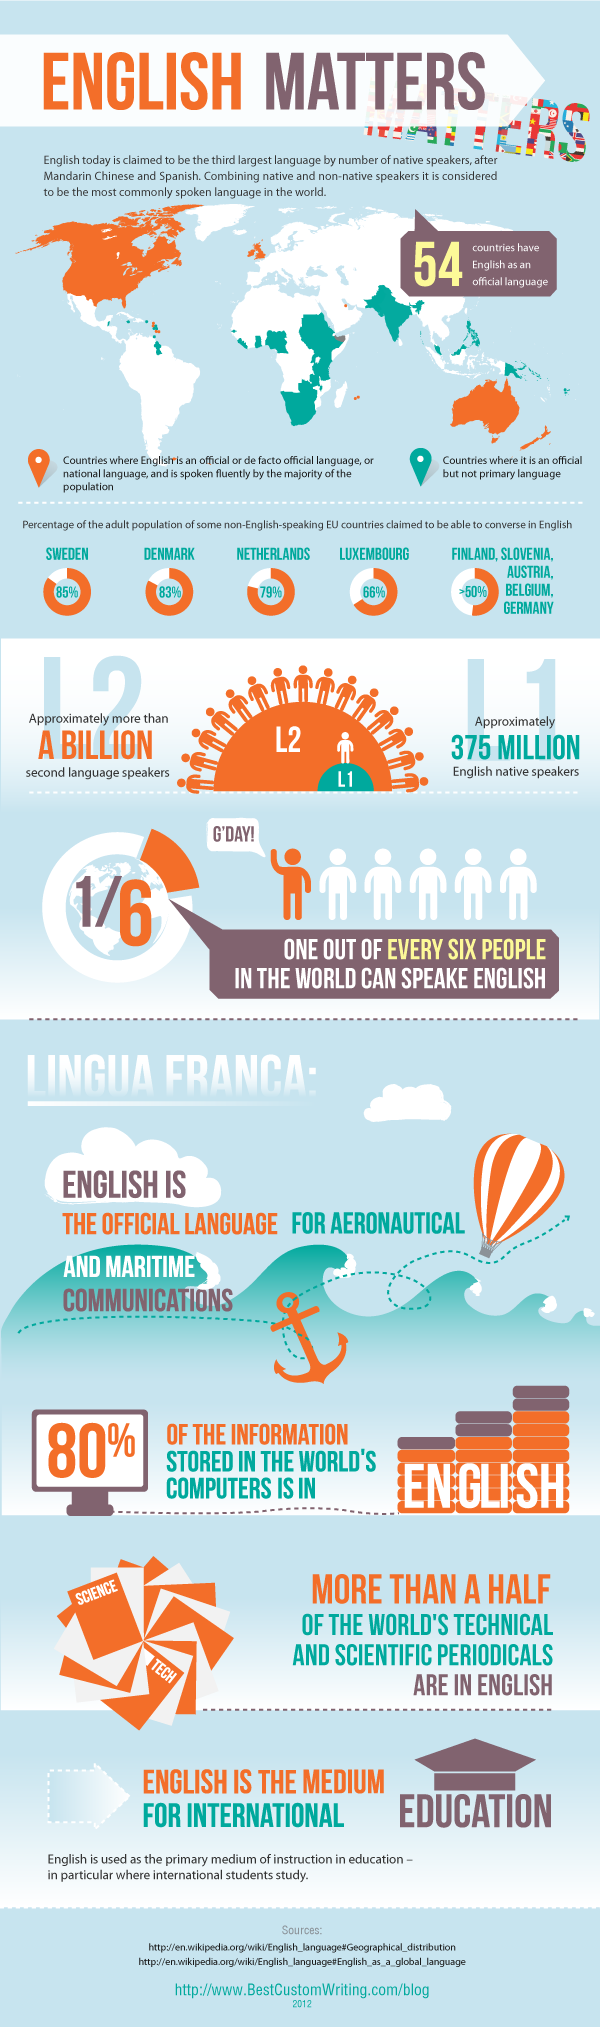 English matters, third largest language, language facts